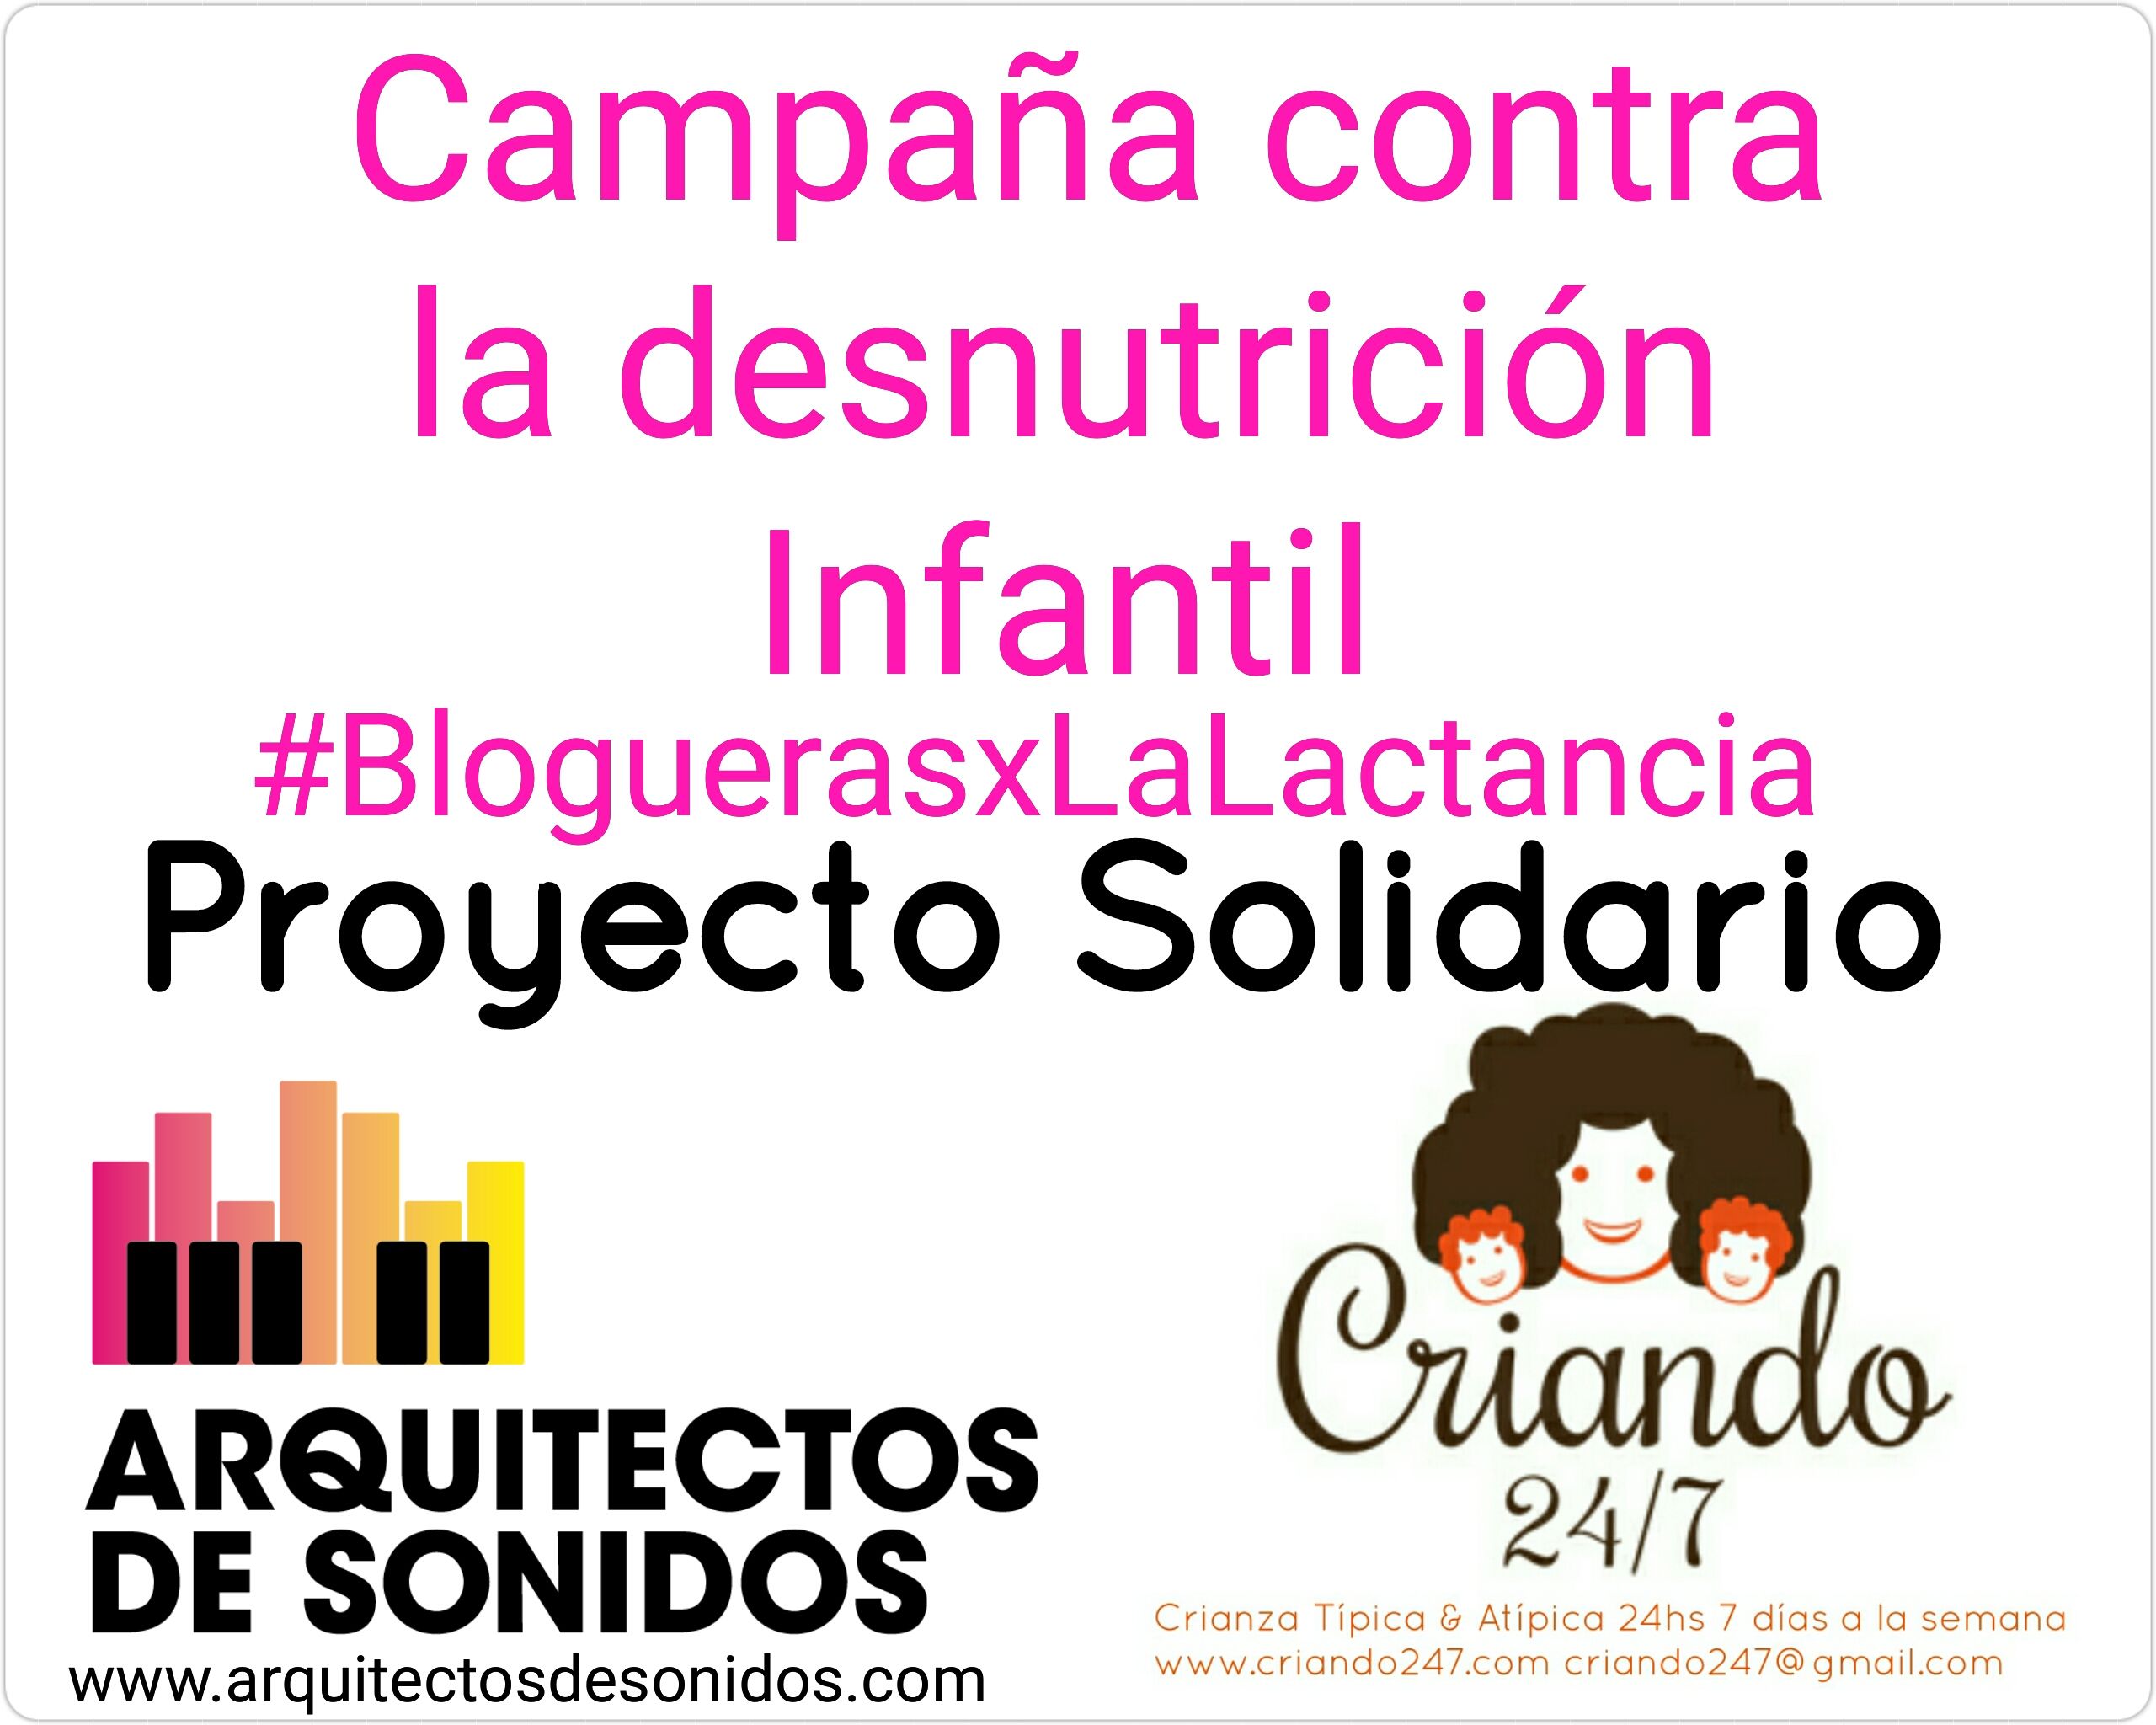 Proy Solidario AdS Criando247 Bloguerasxlalactancia